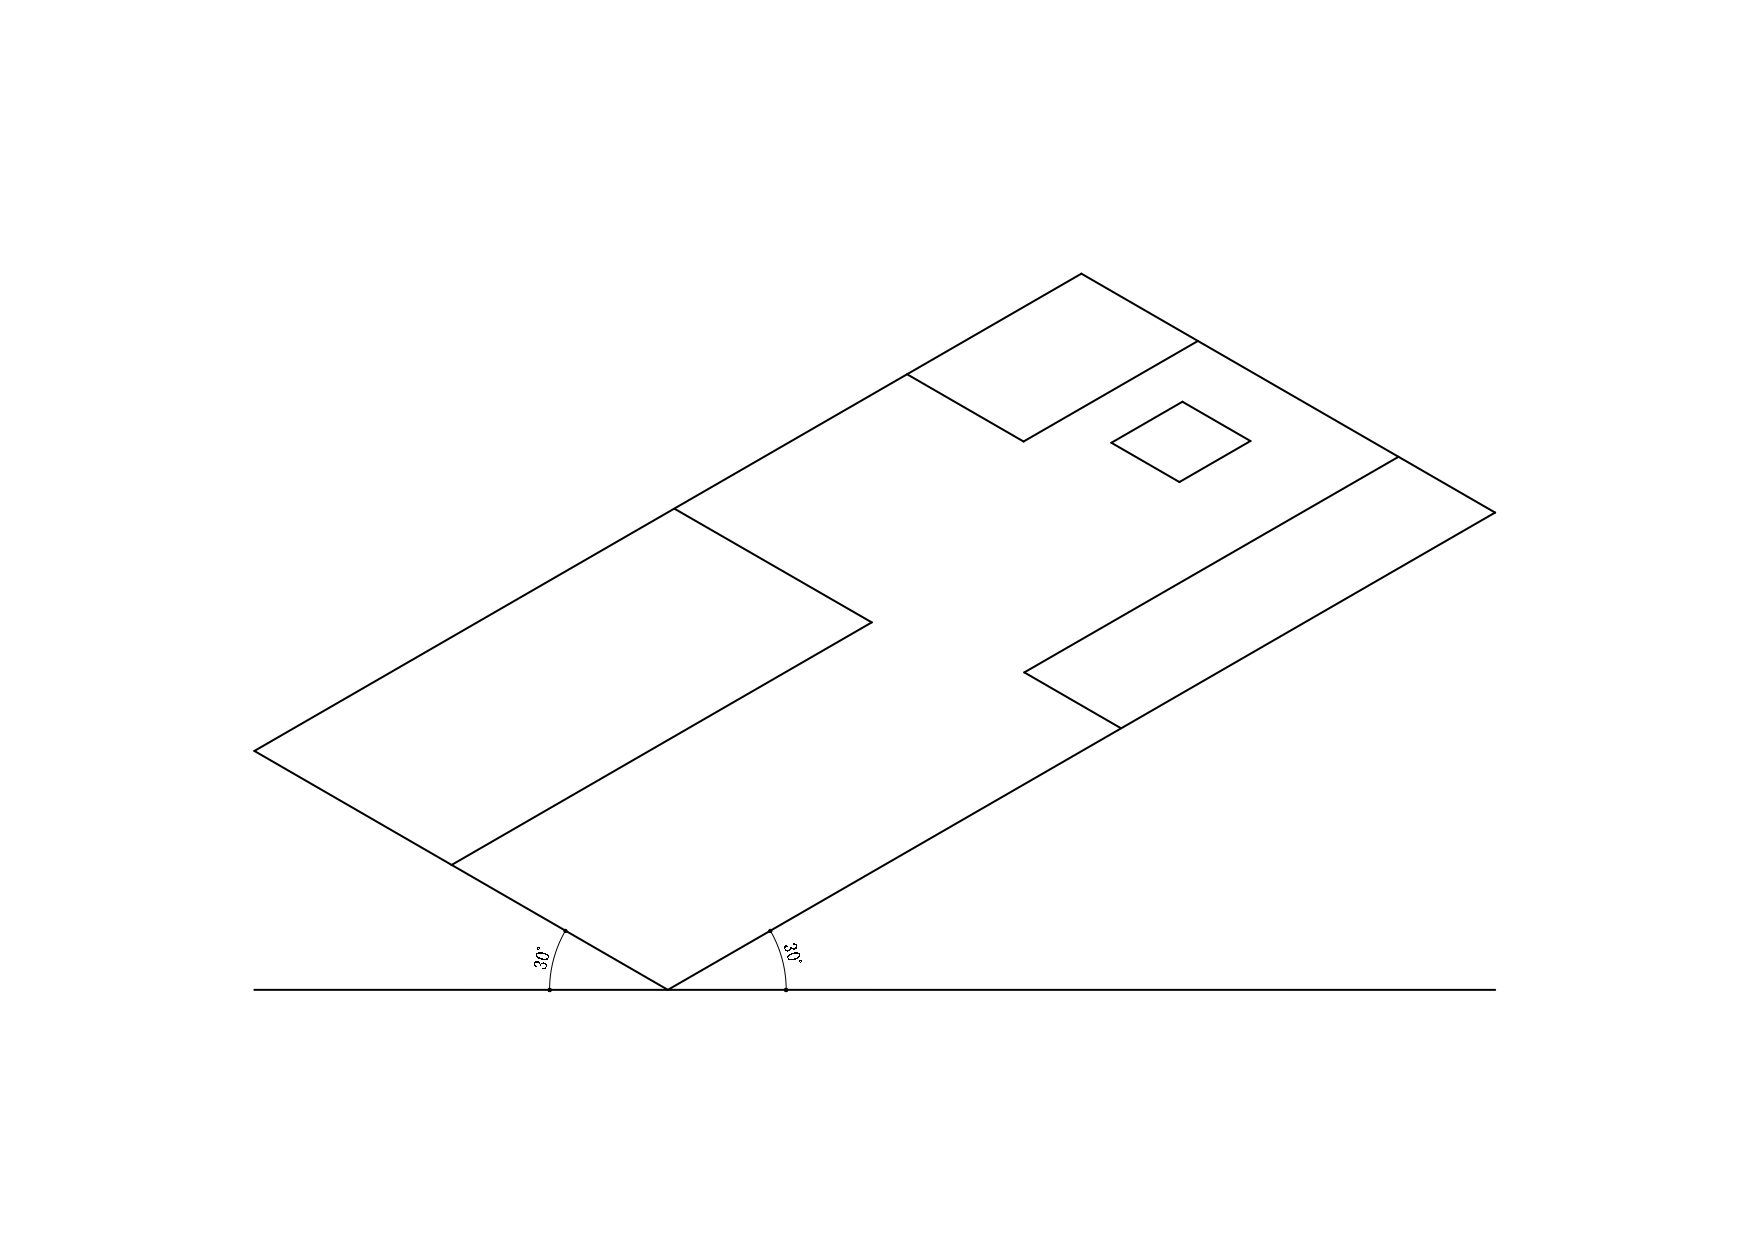 平面図でいう直角部分が120°になるように作図する